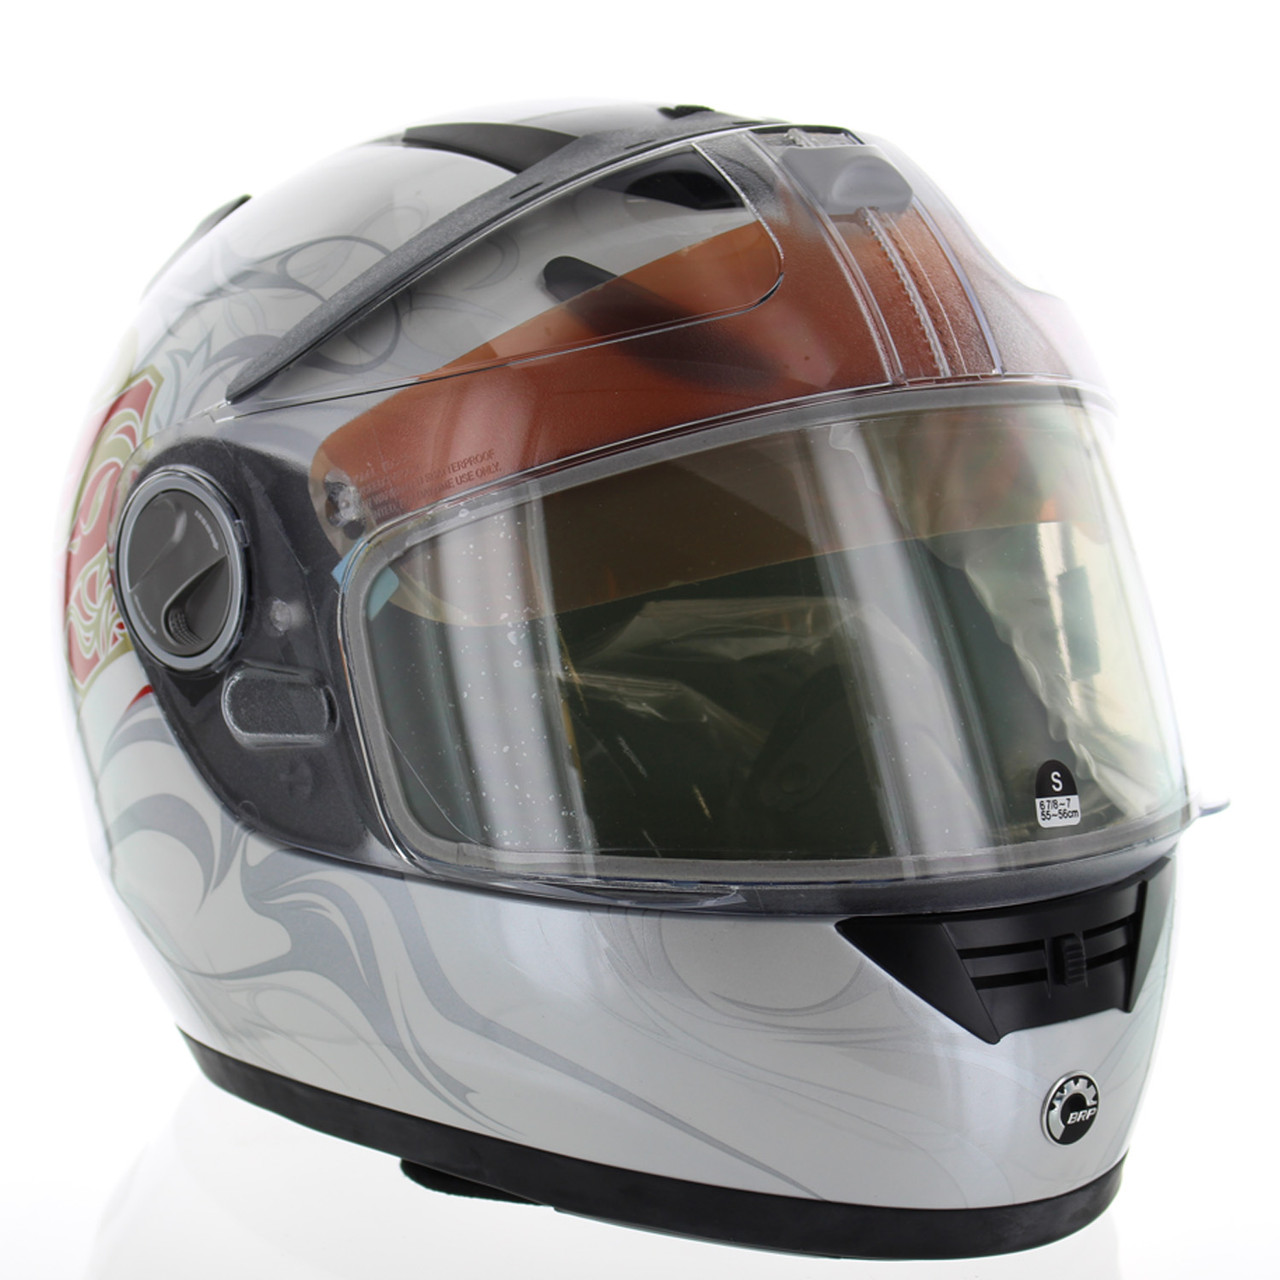 BRP New OEM Ski-Doo Gs-2 Nunavik White Full Face Helmet Small, 4472710408